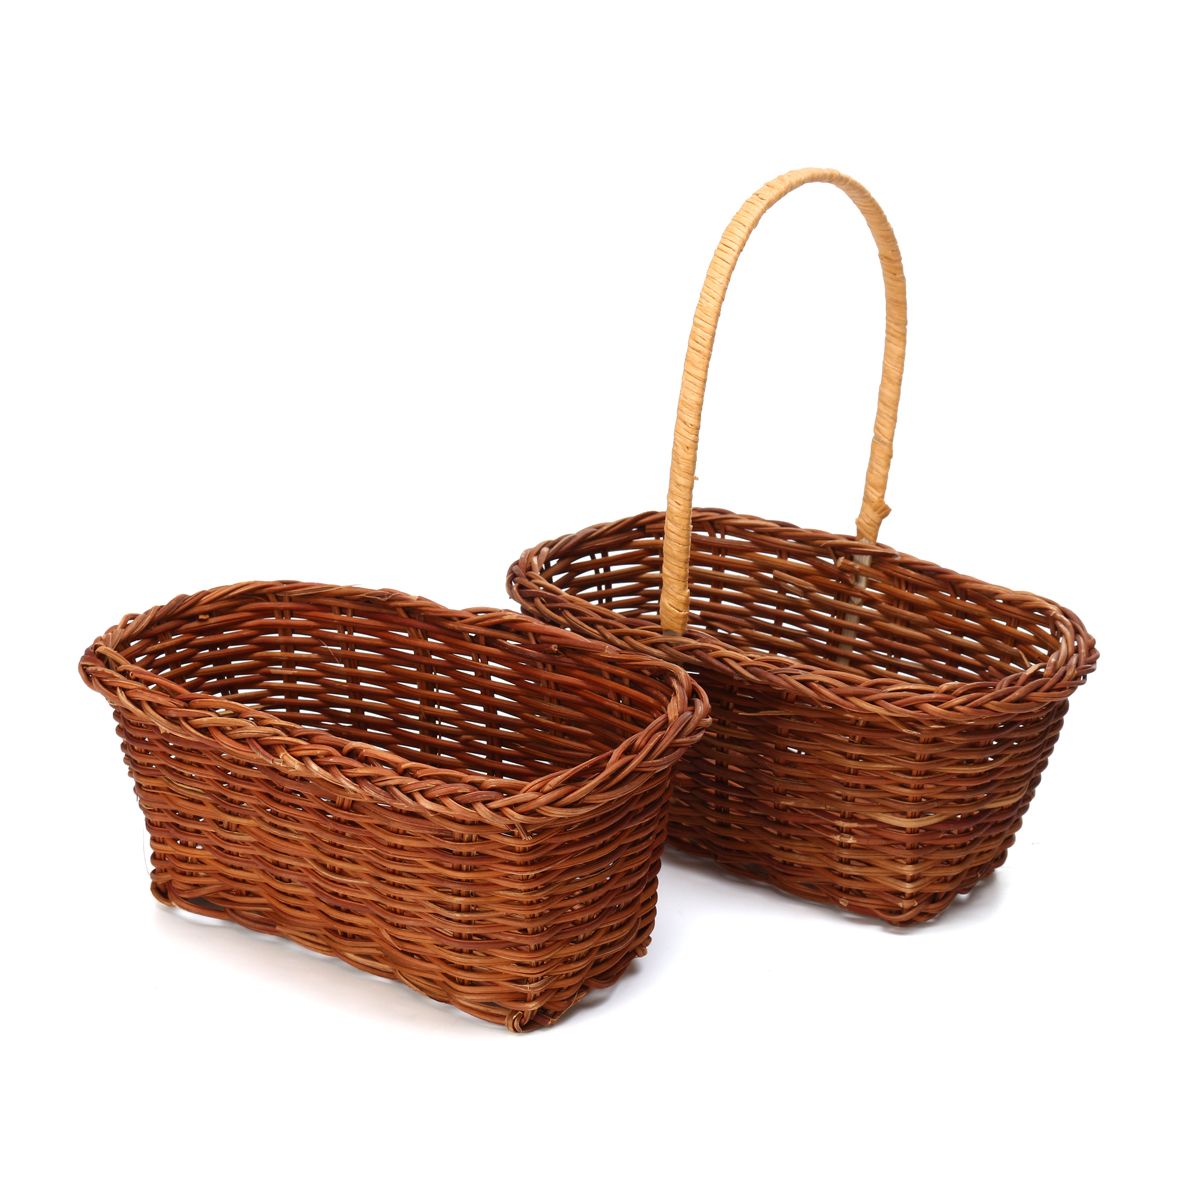 Mini-Handled-Flower-Easter-Gift-Hamper-Vintage-Wedding-Storage-Baskets-1459577